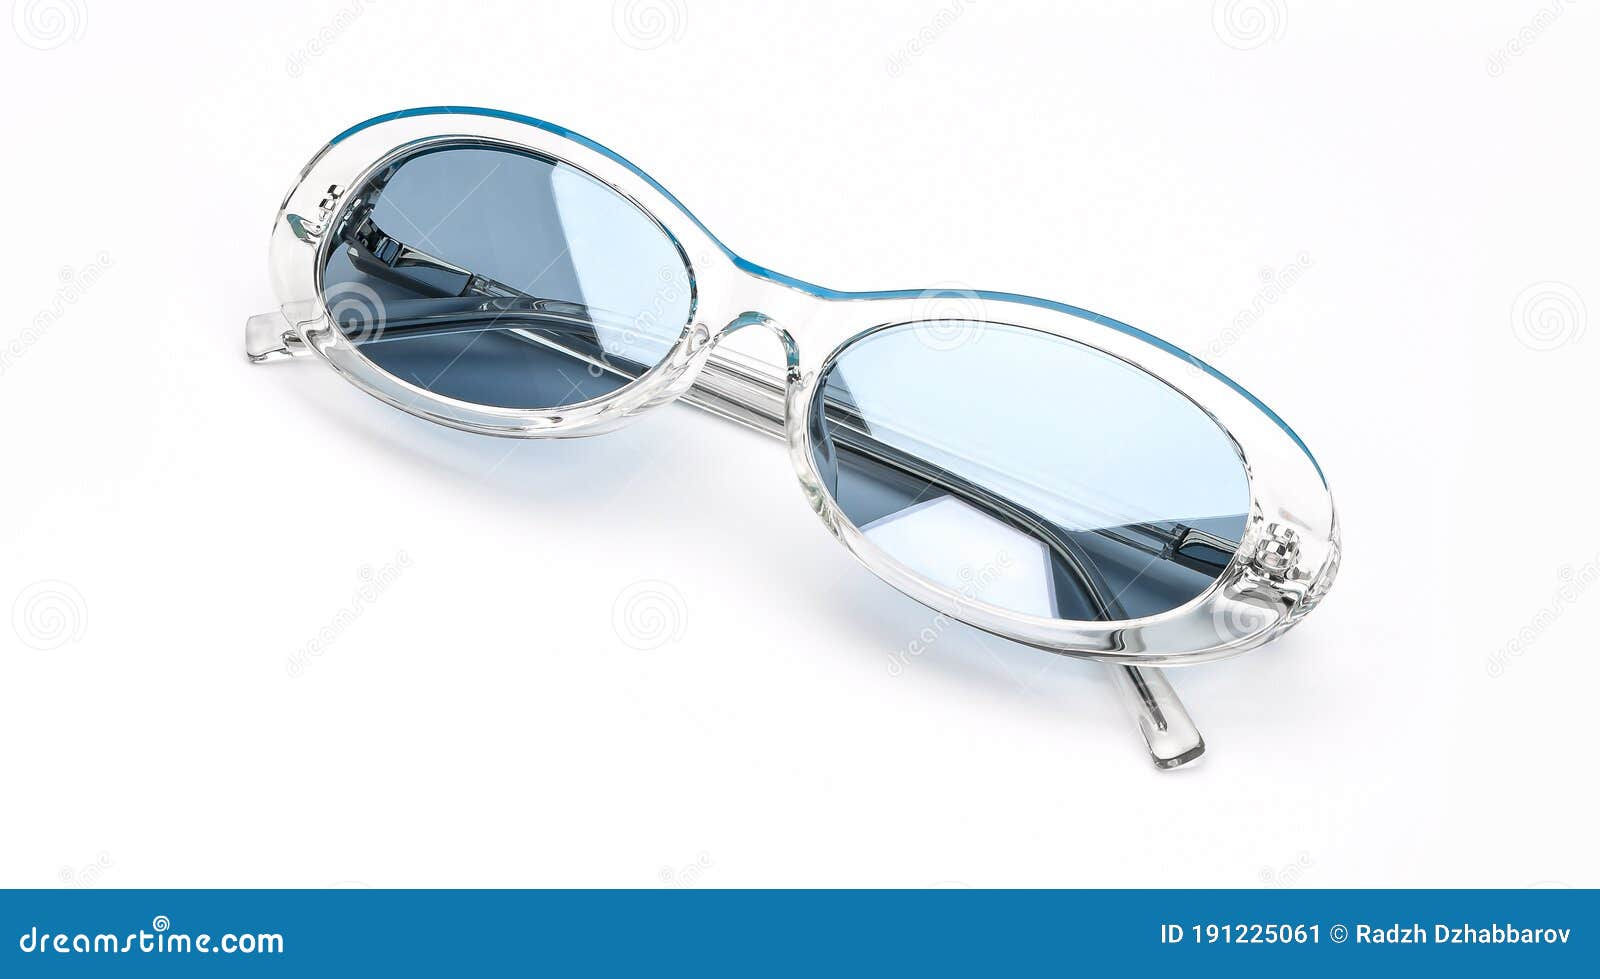 Gafas De Sol Retro Aisladas En Fondo Blanco. Gafas De Sol Vintage Mujer Accesorios Verano Color Blanco Y Azul. Superior Imagen de archivo - Imagen de elegancia: 191225061